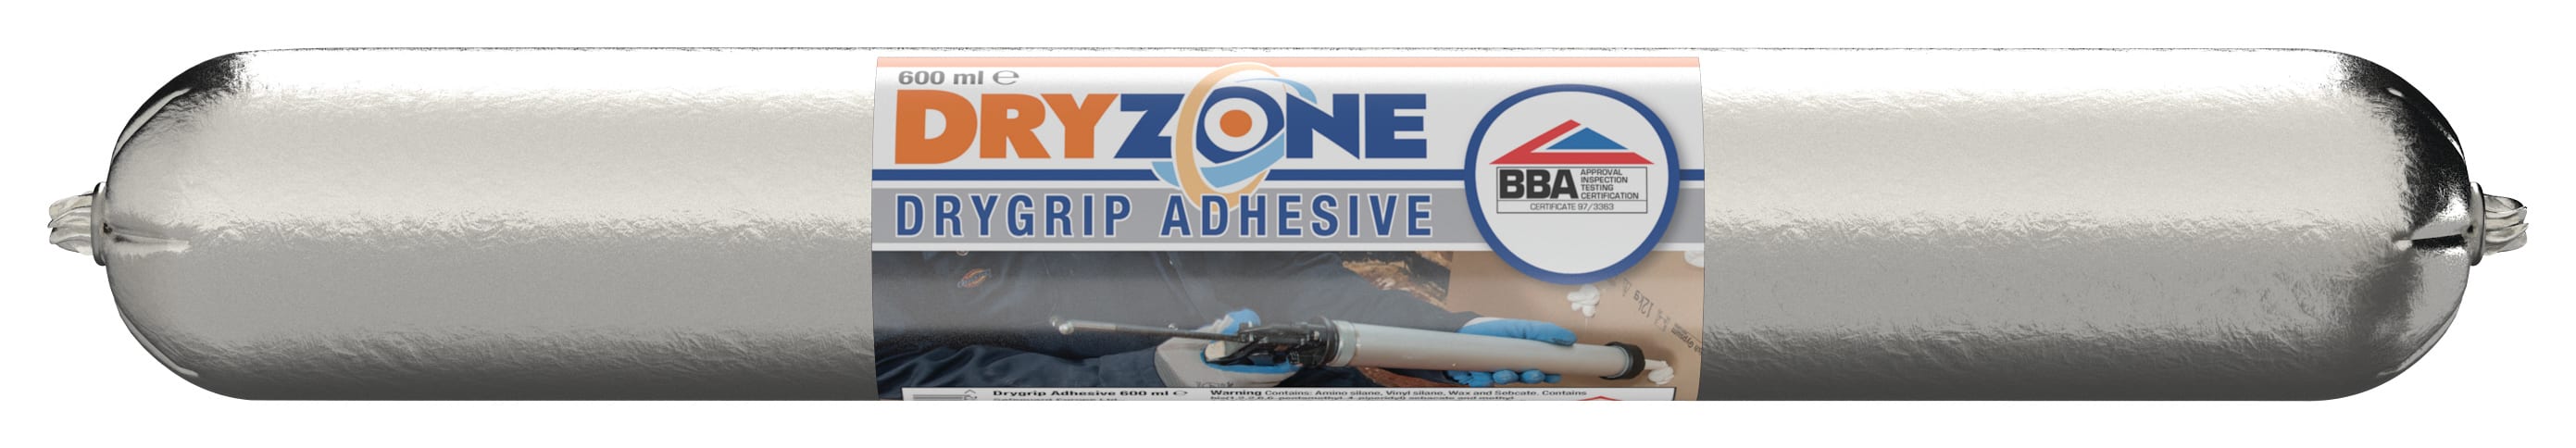 Dryzone Drygrip White Adhesive - 600ml